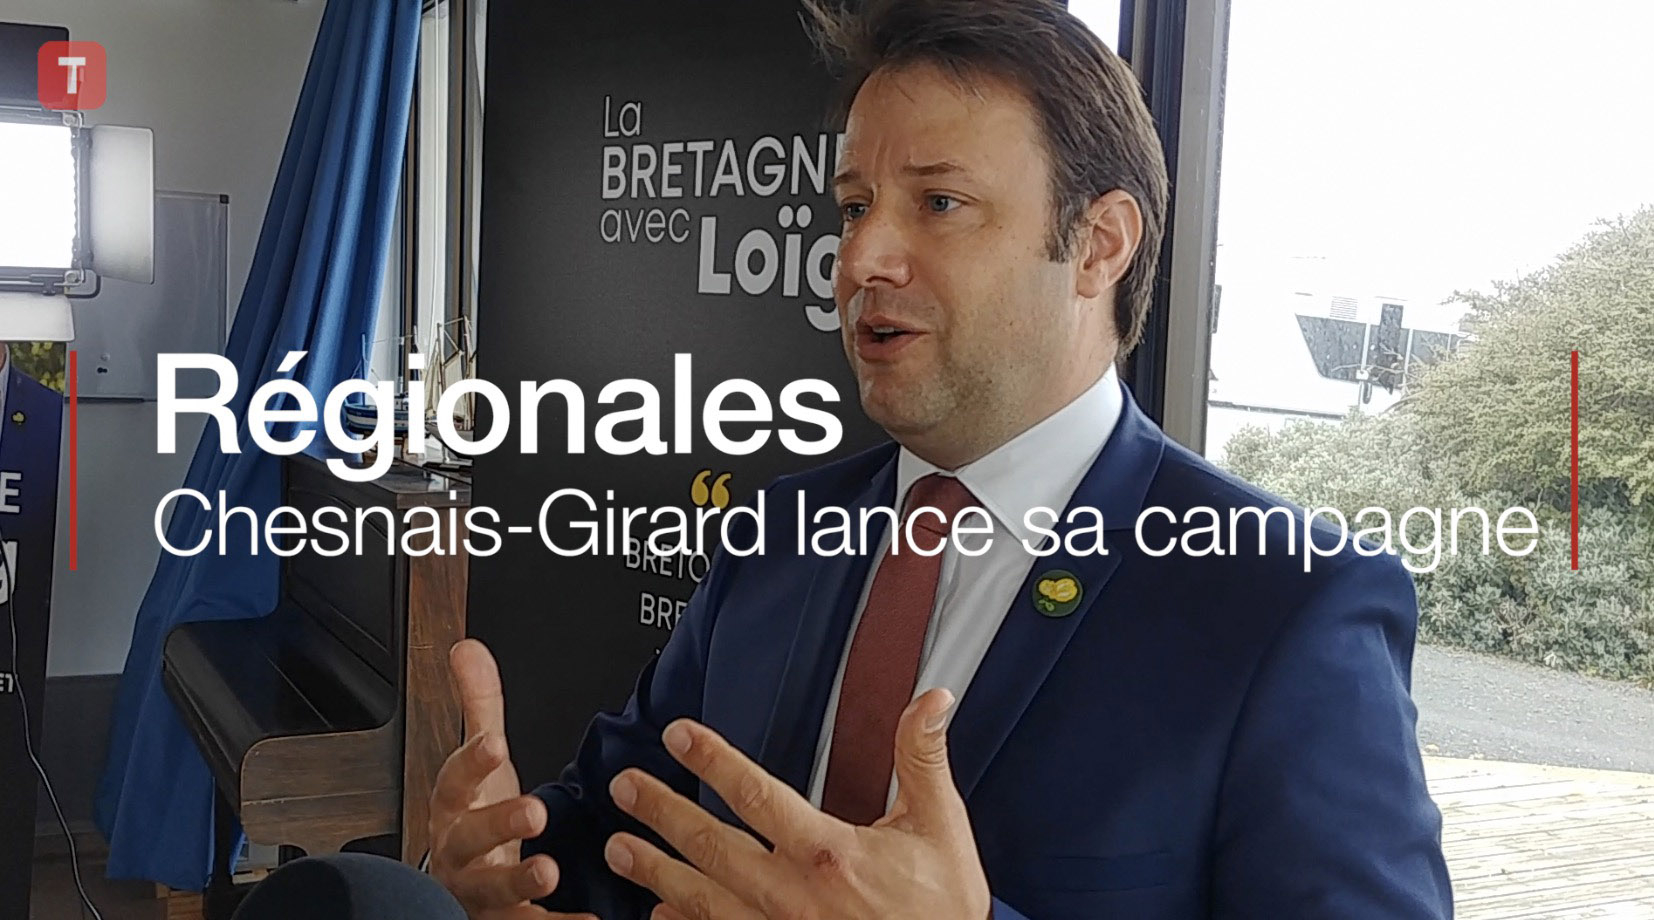 Régionales : Chesnais-Girard lance sa campagne (Le Télégramme)